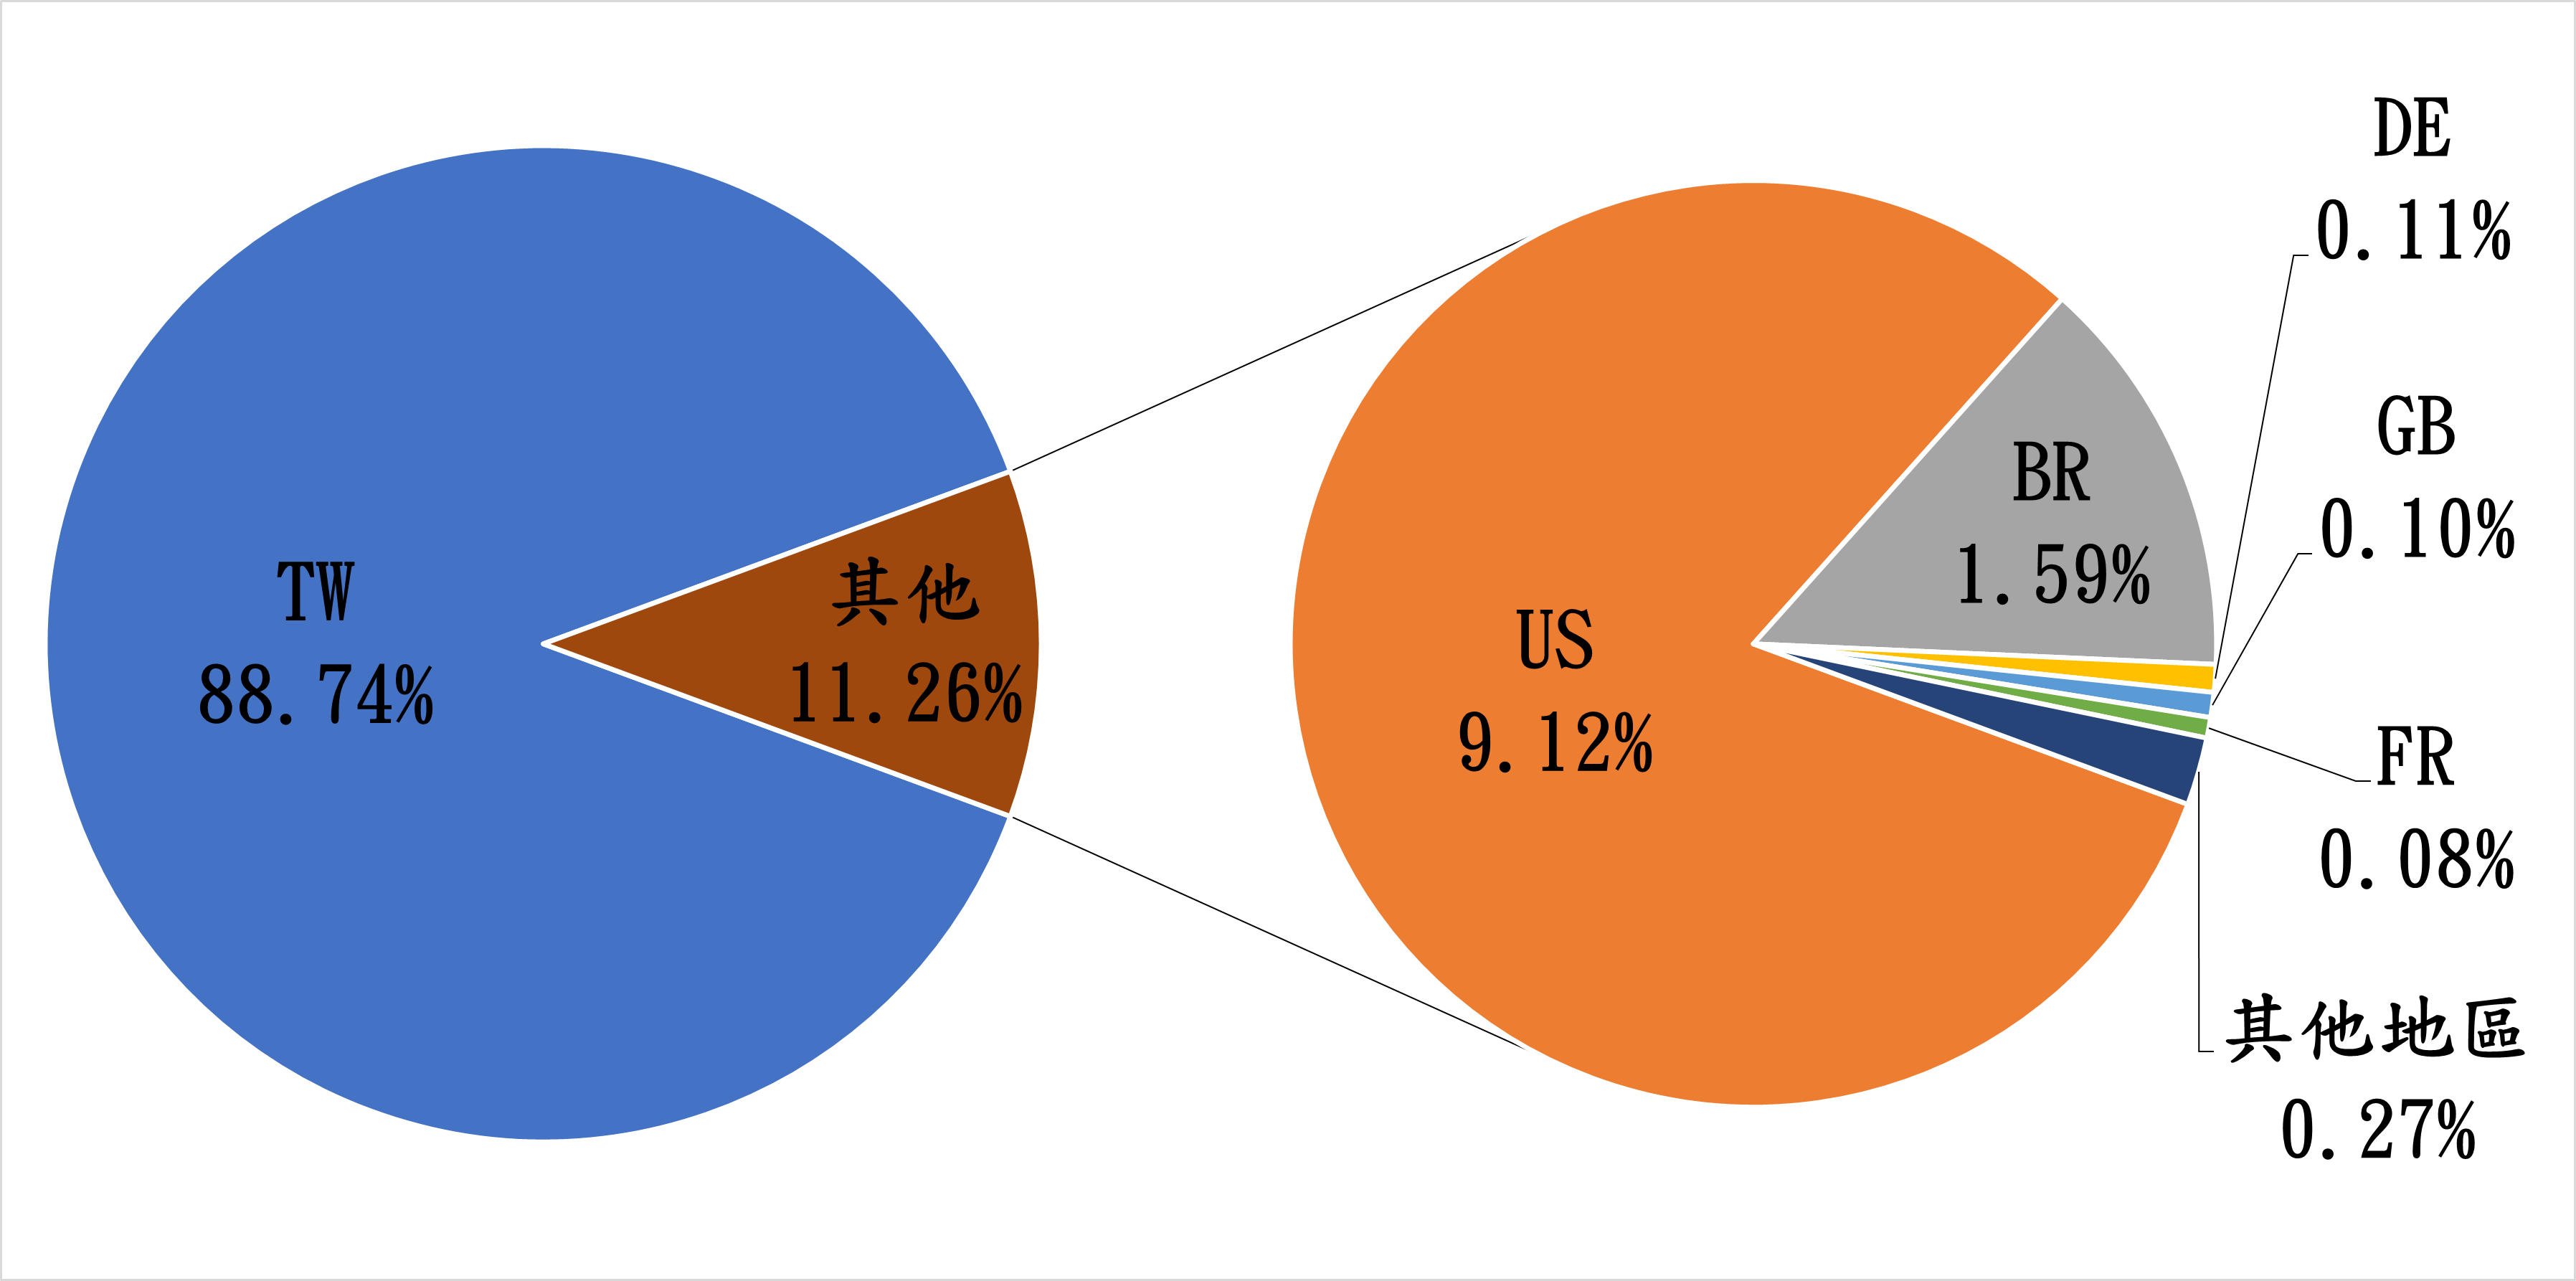 TW88.74% 其他11.26% US9.12% BR1.59% DE0.11% GB0.1% FR0.08% 其他地區0.27%